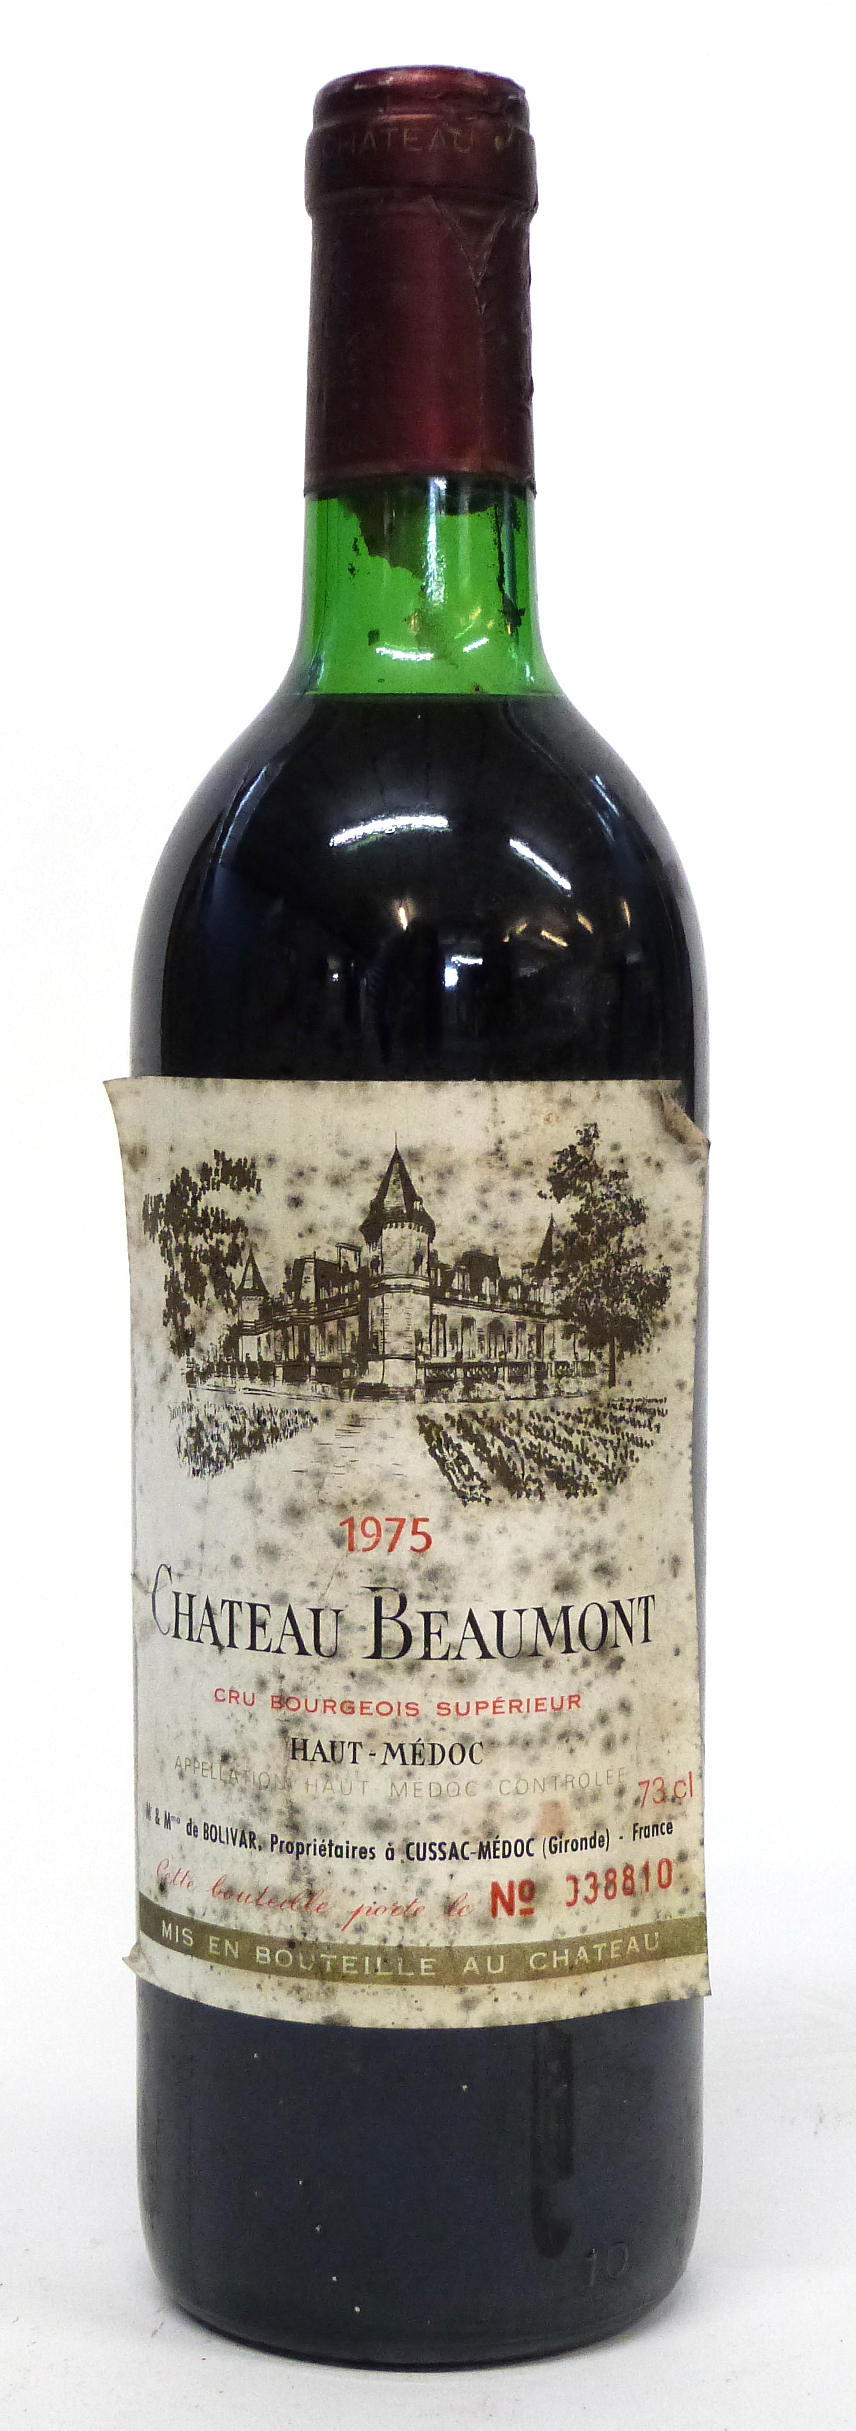 Chateau Beaumont 1975 1 bottle